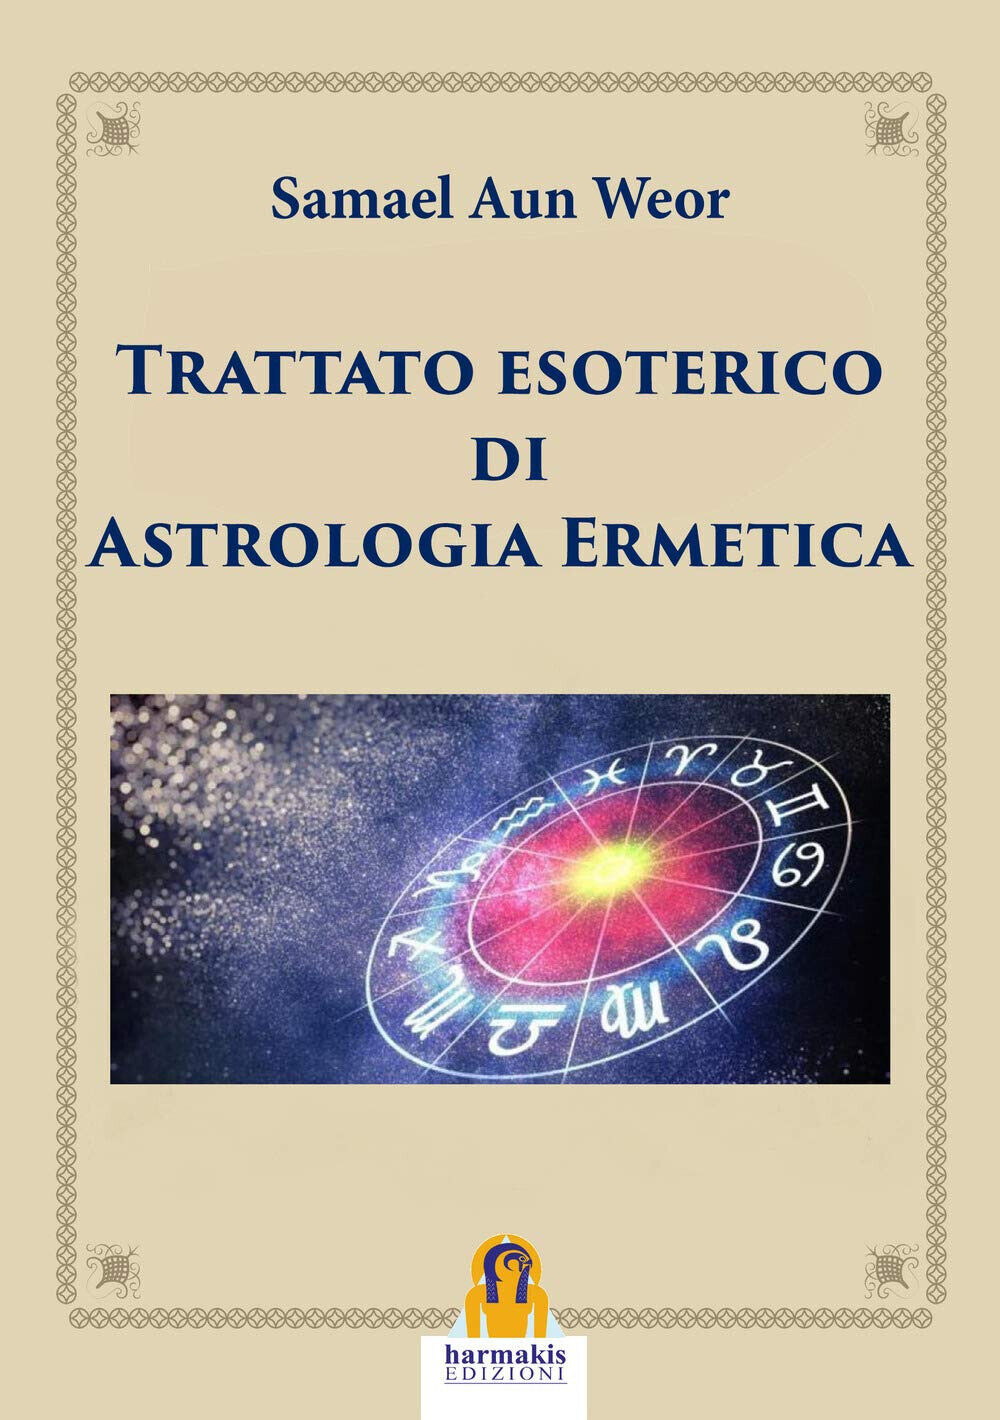 Trattato esoterico di astrologia ermetica - Samael Aun Weor - Harmakis, 2019 libro usato